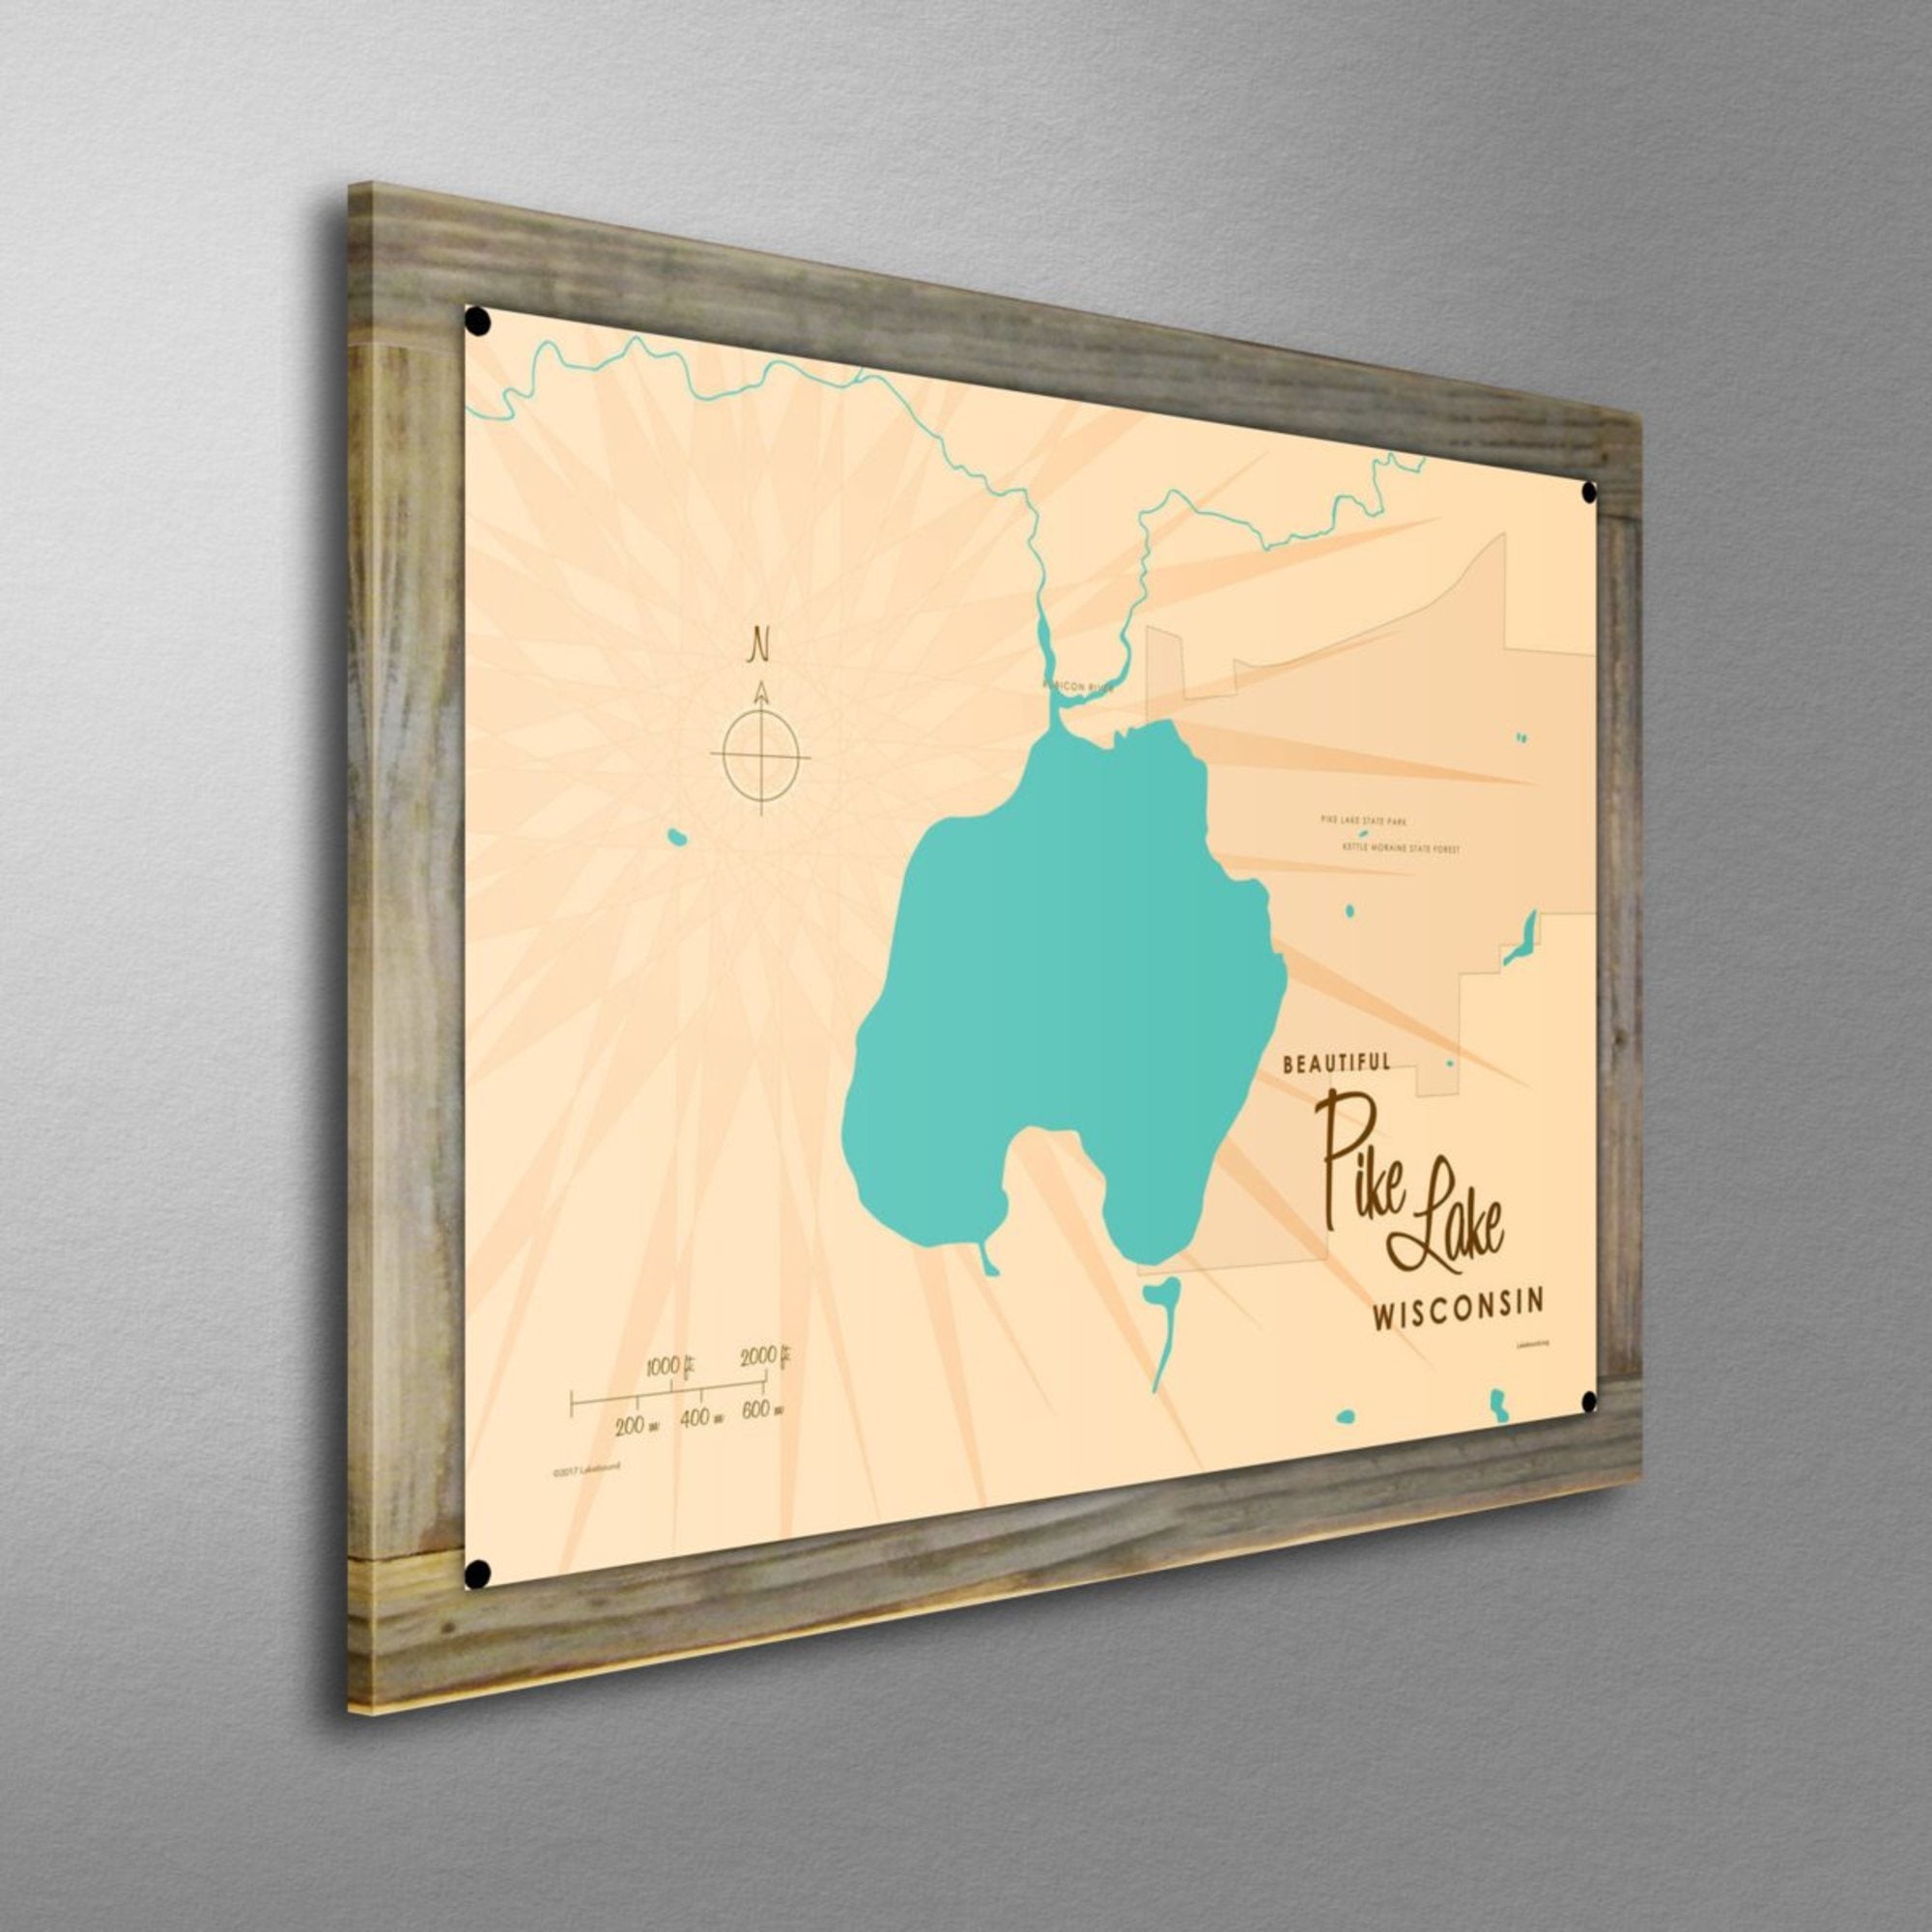 Pike Lake Wisconsin, Wood-Mounted Metal Sign Map Art